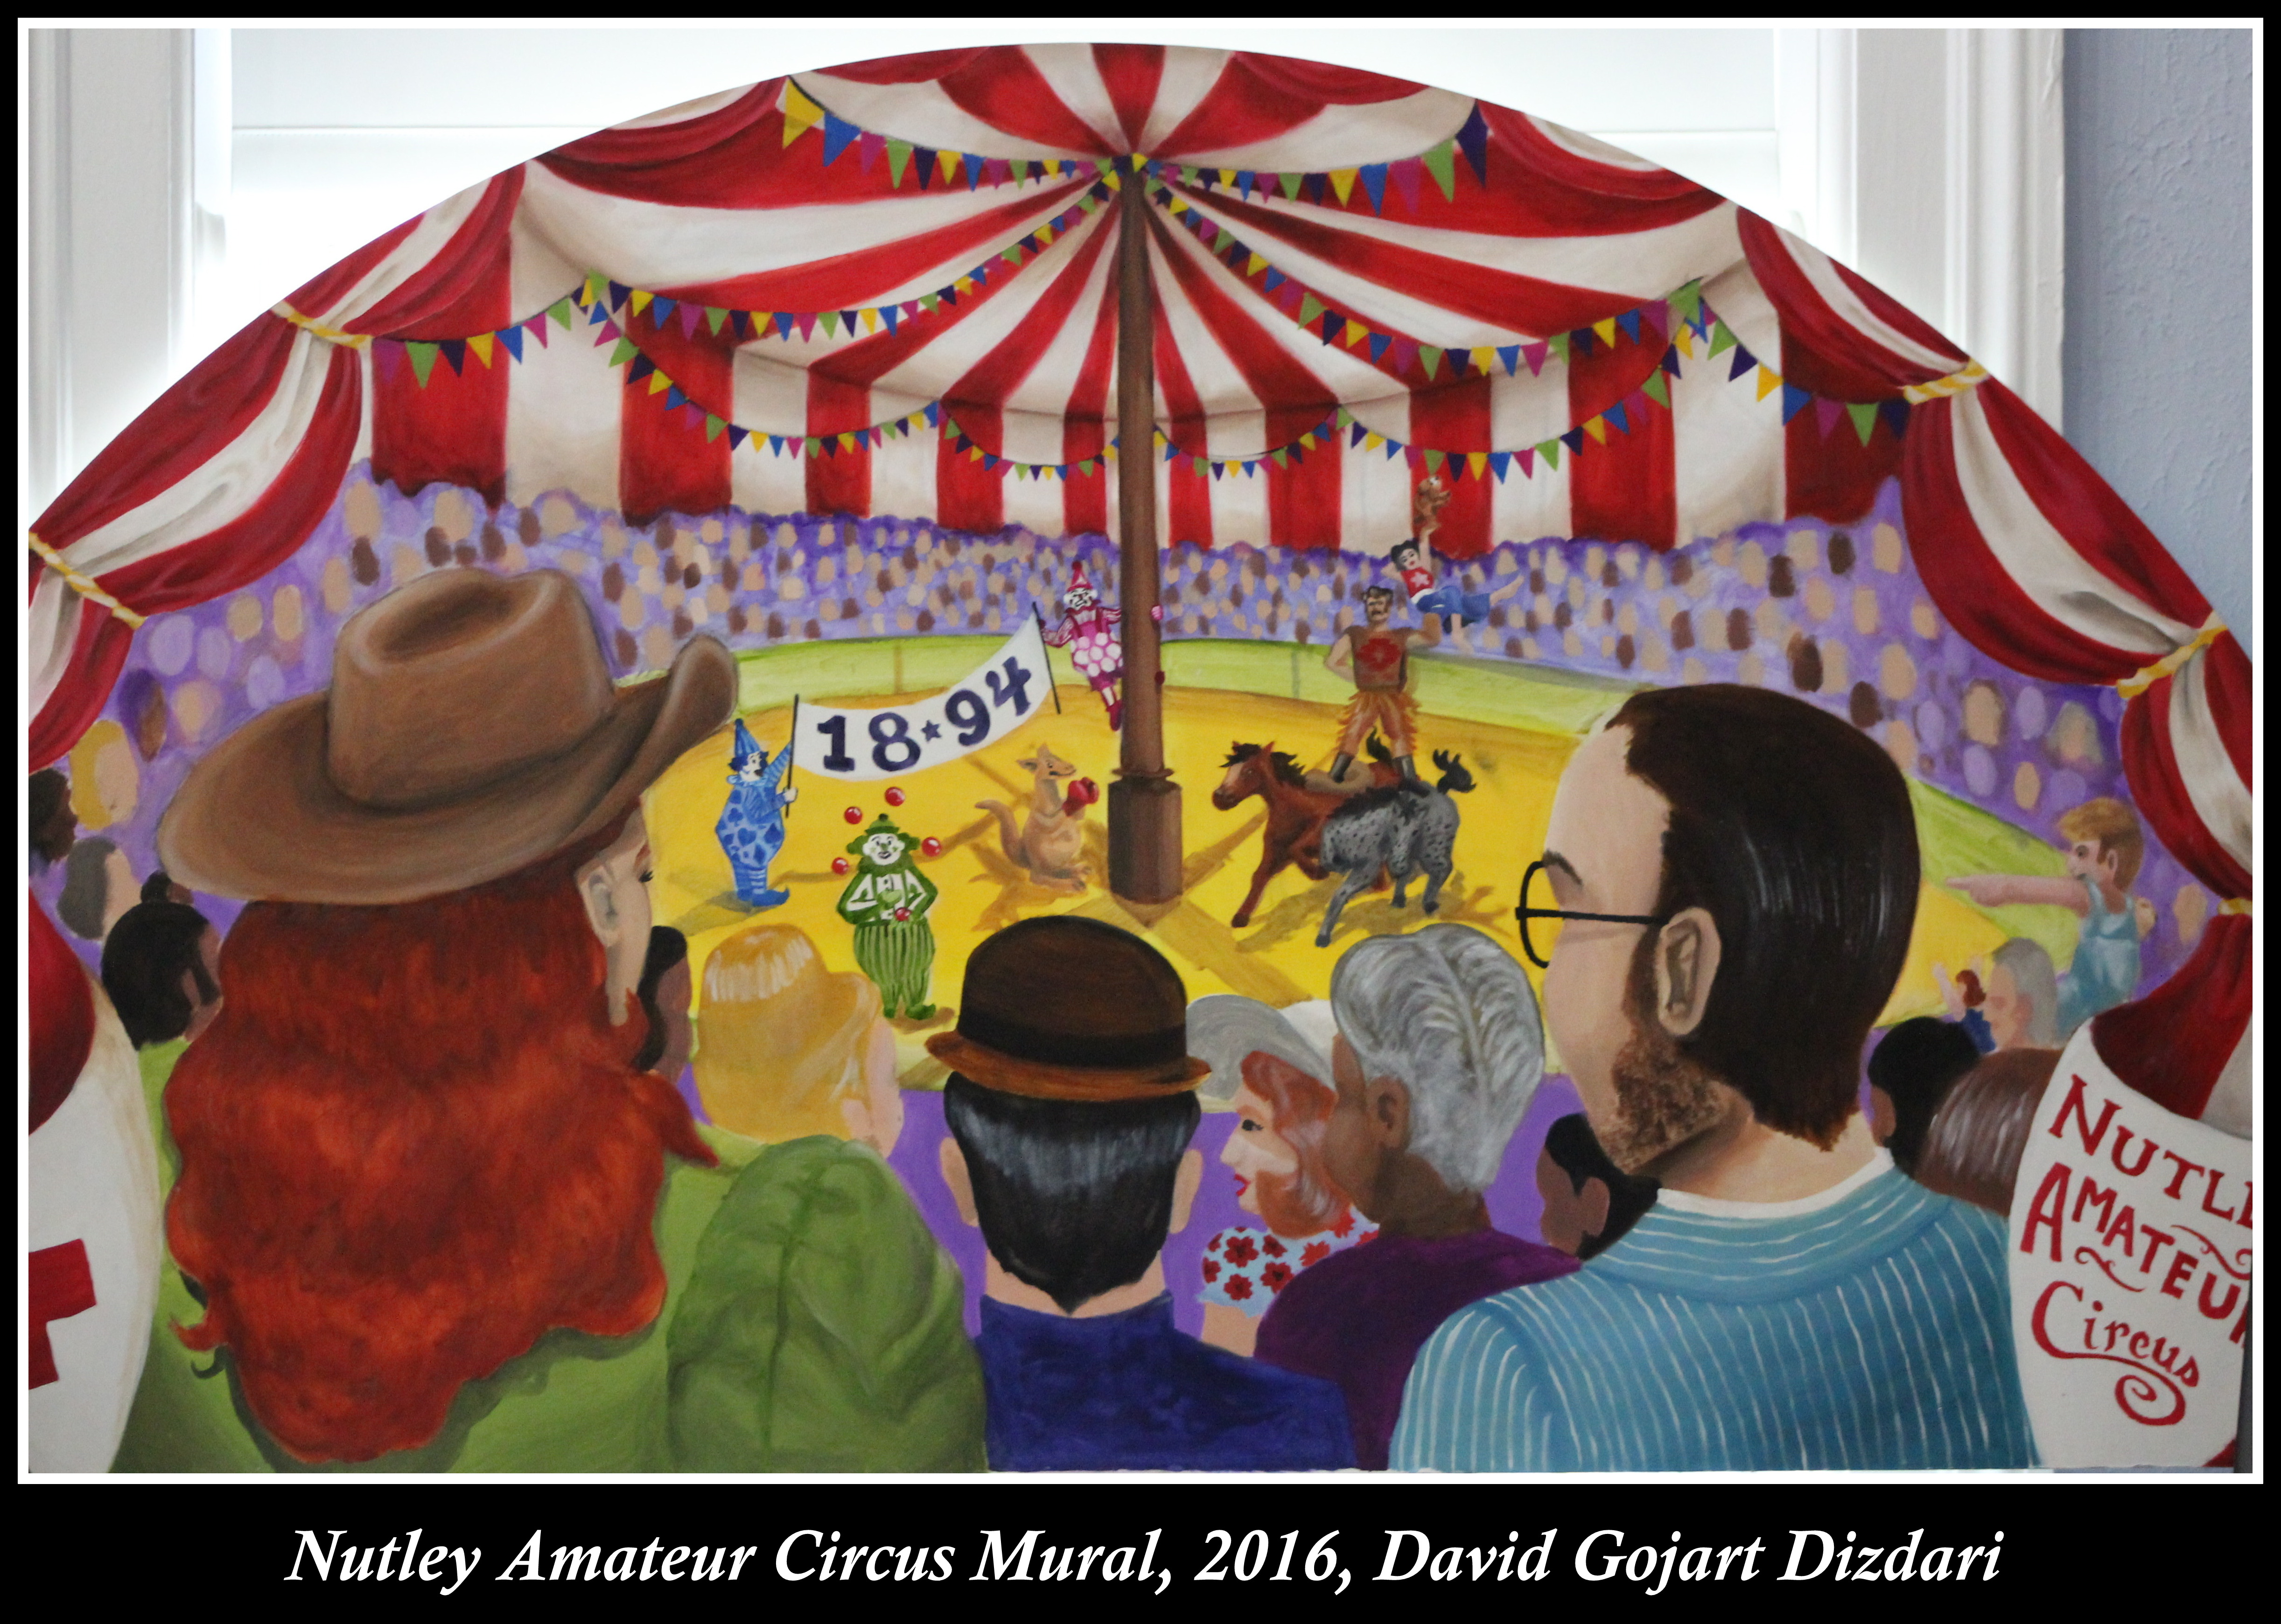 Nutley Amateur Circus, 2016, David Gojart Dizdari, Mural Competition